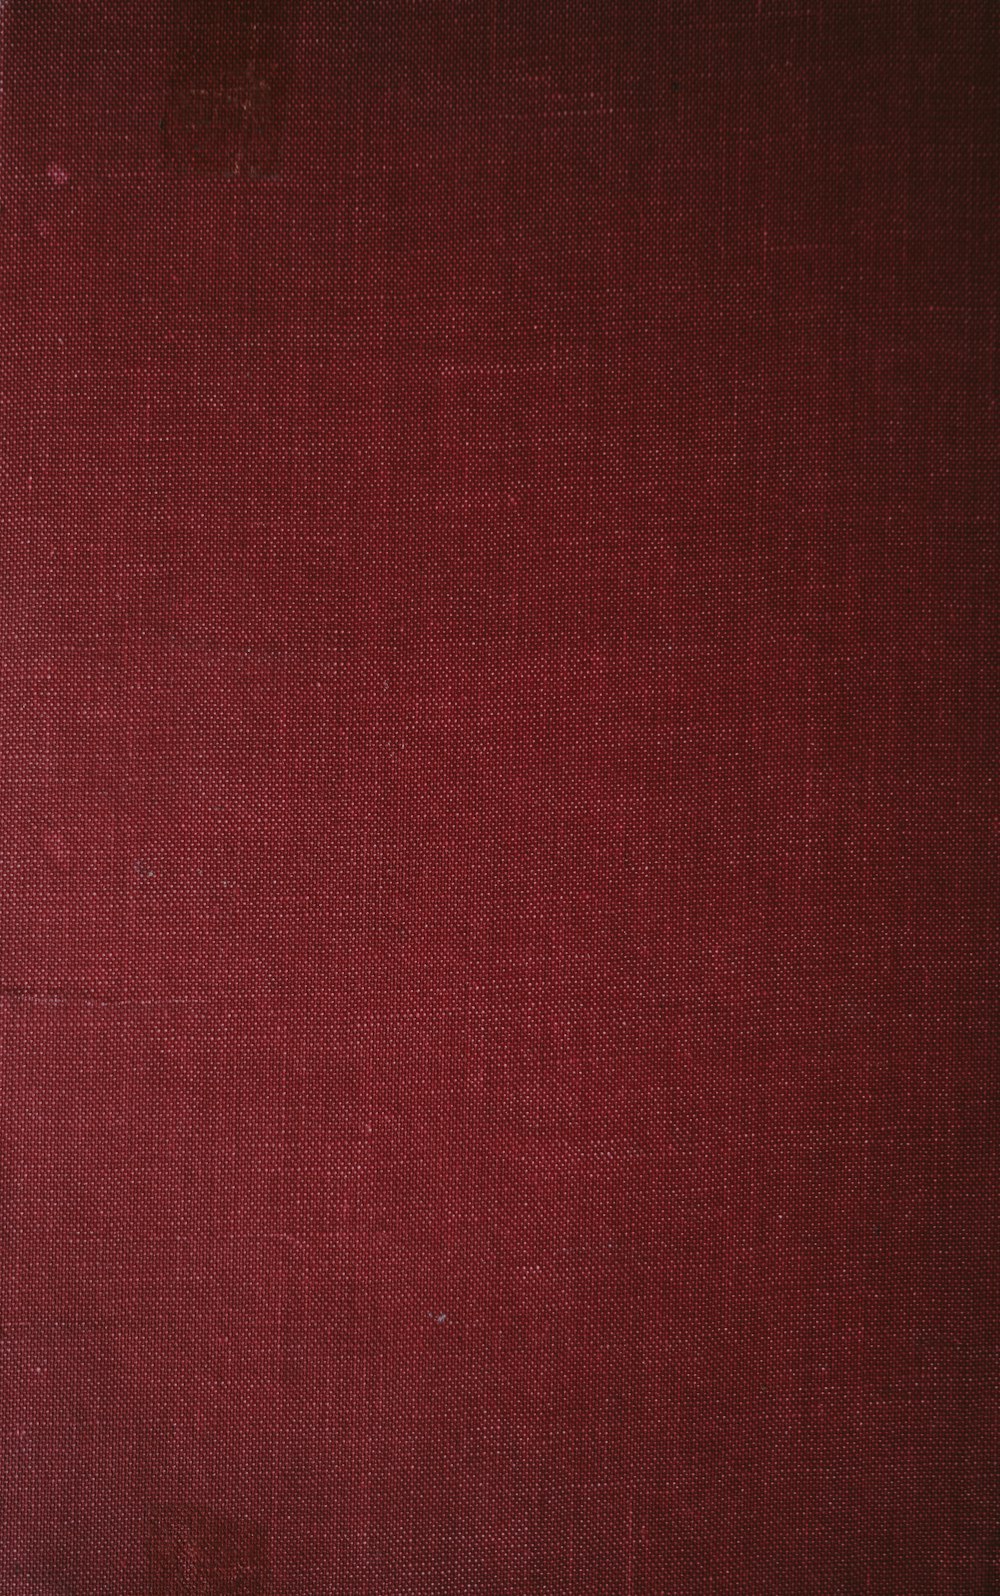 un primo piano della copertina di un libro rosso